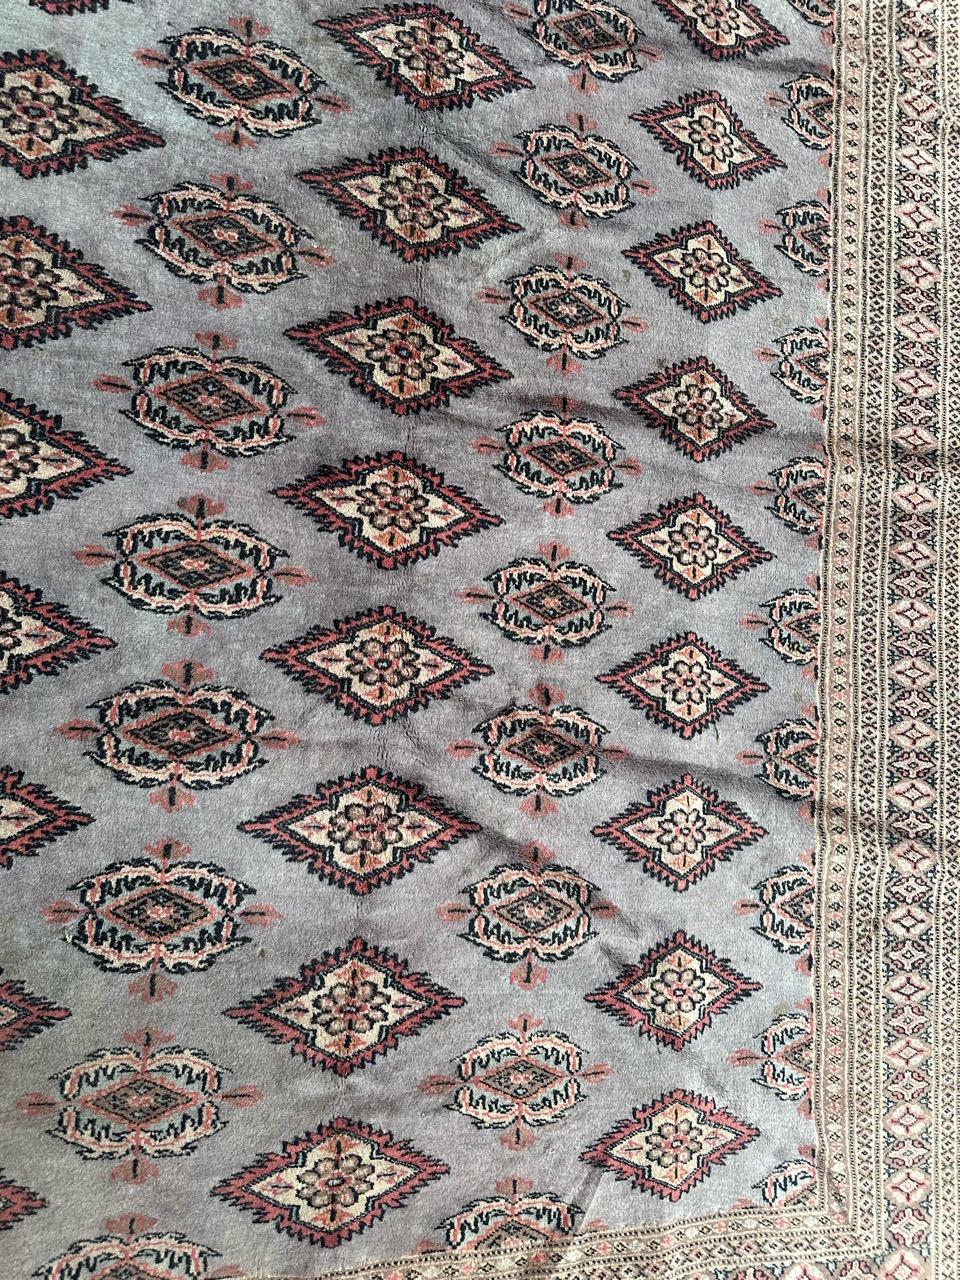 Rustic vintage Pakistani rug  For Sale